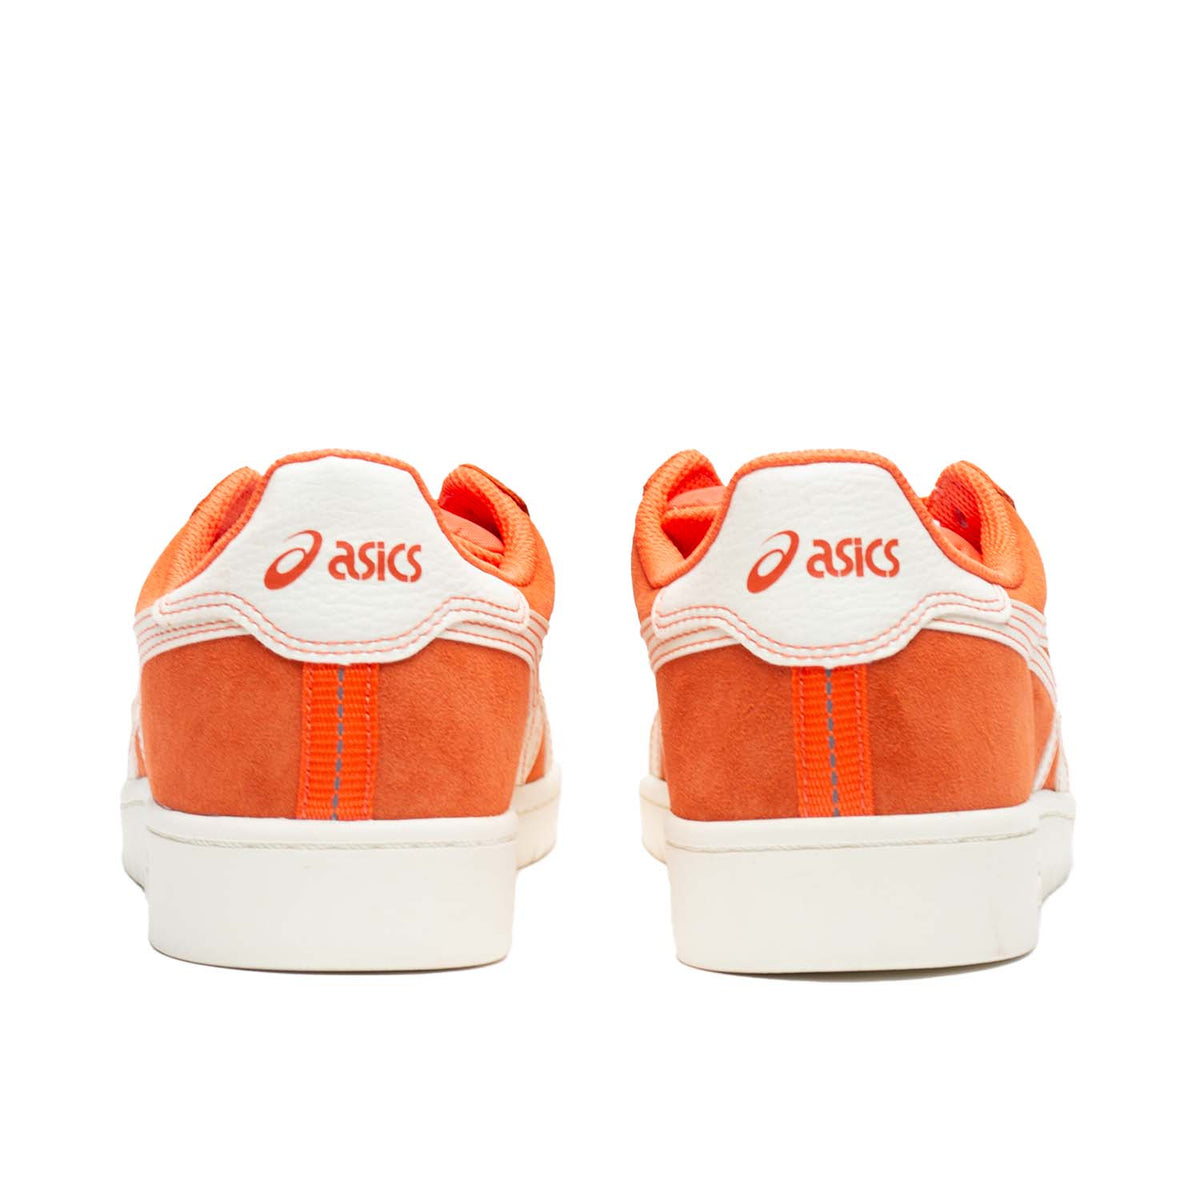 Asics - Japan Pro - Orange/Ivory